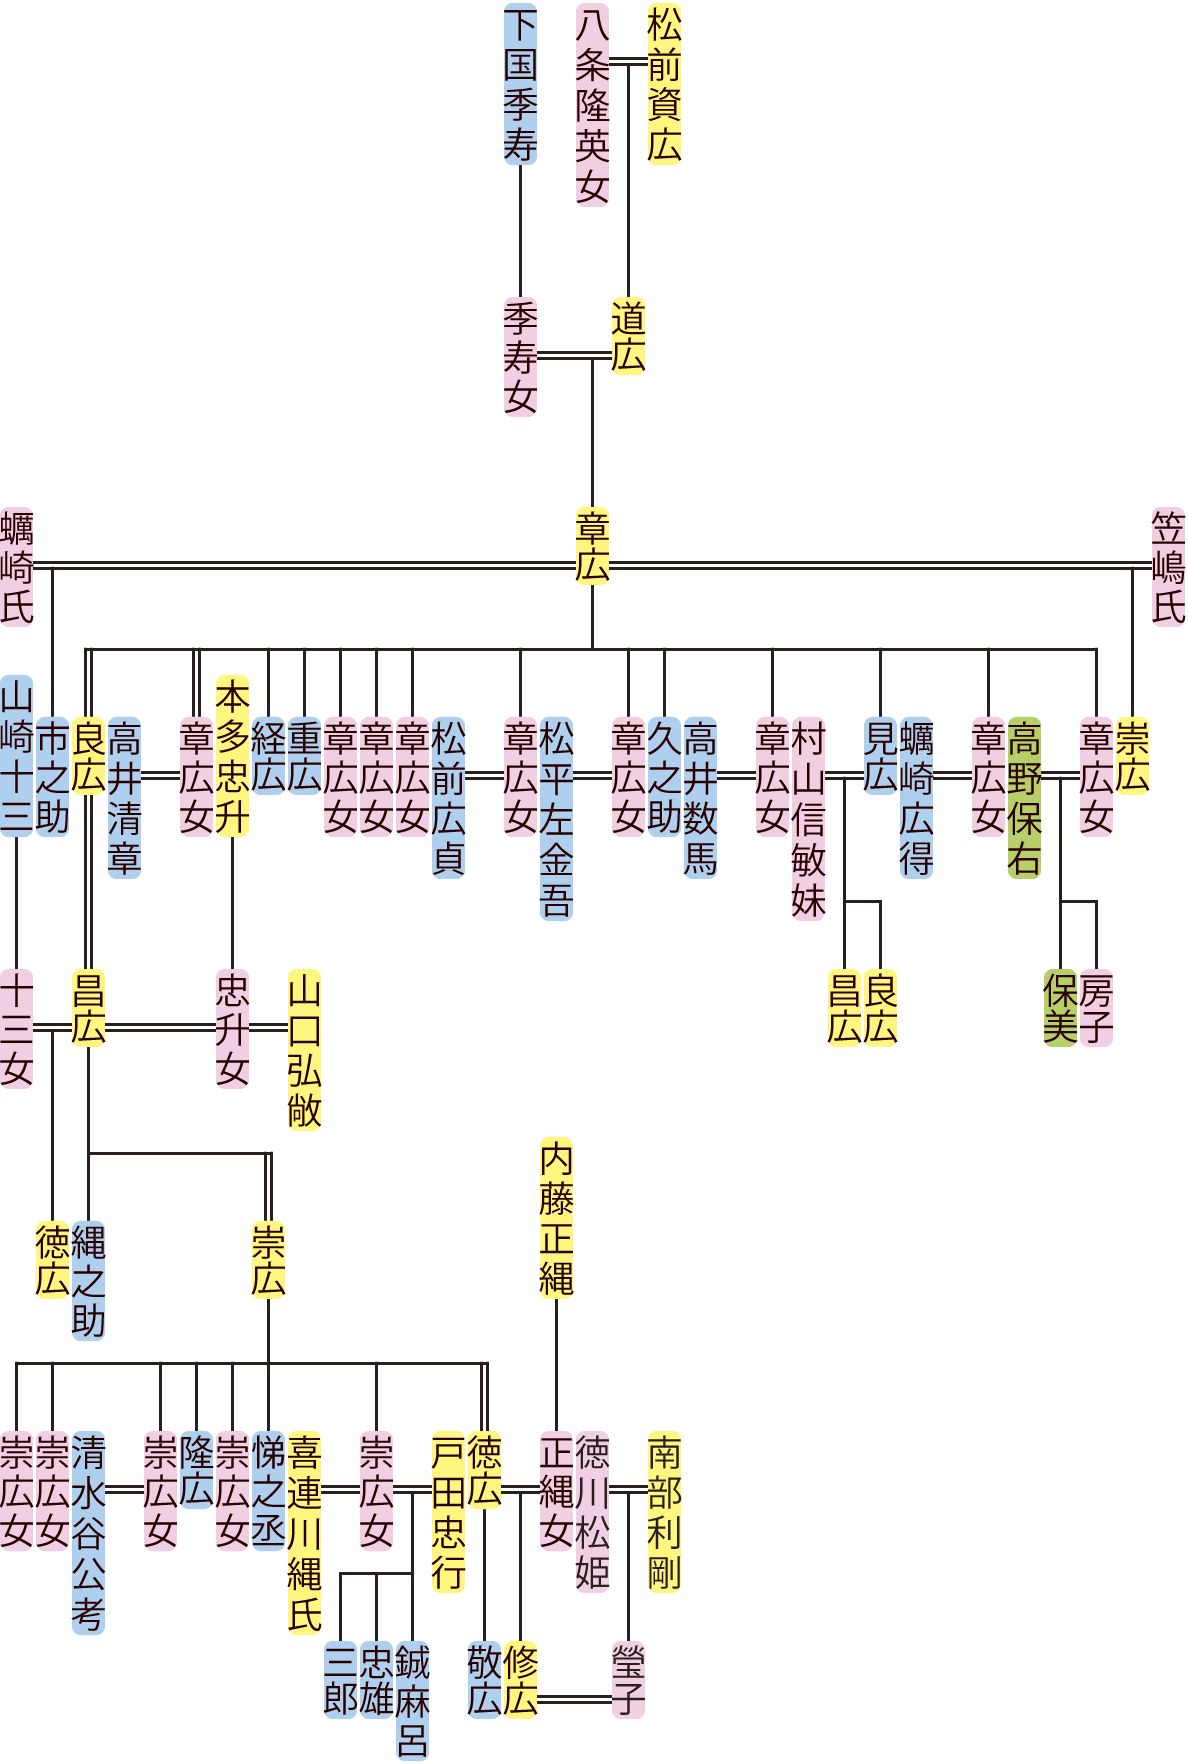 松前章広～修広の系図